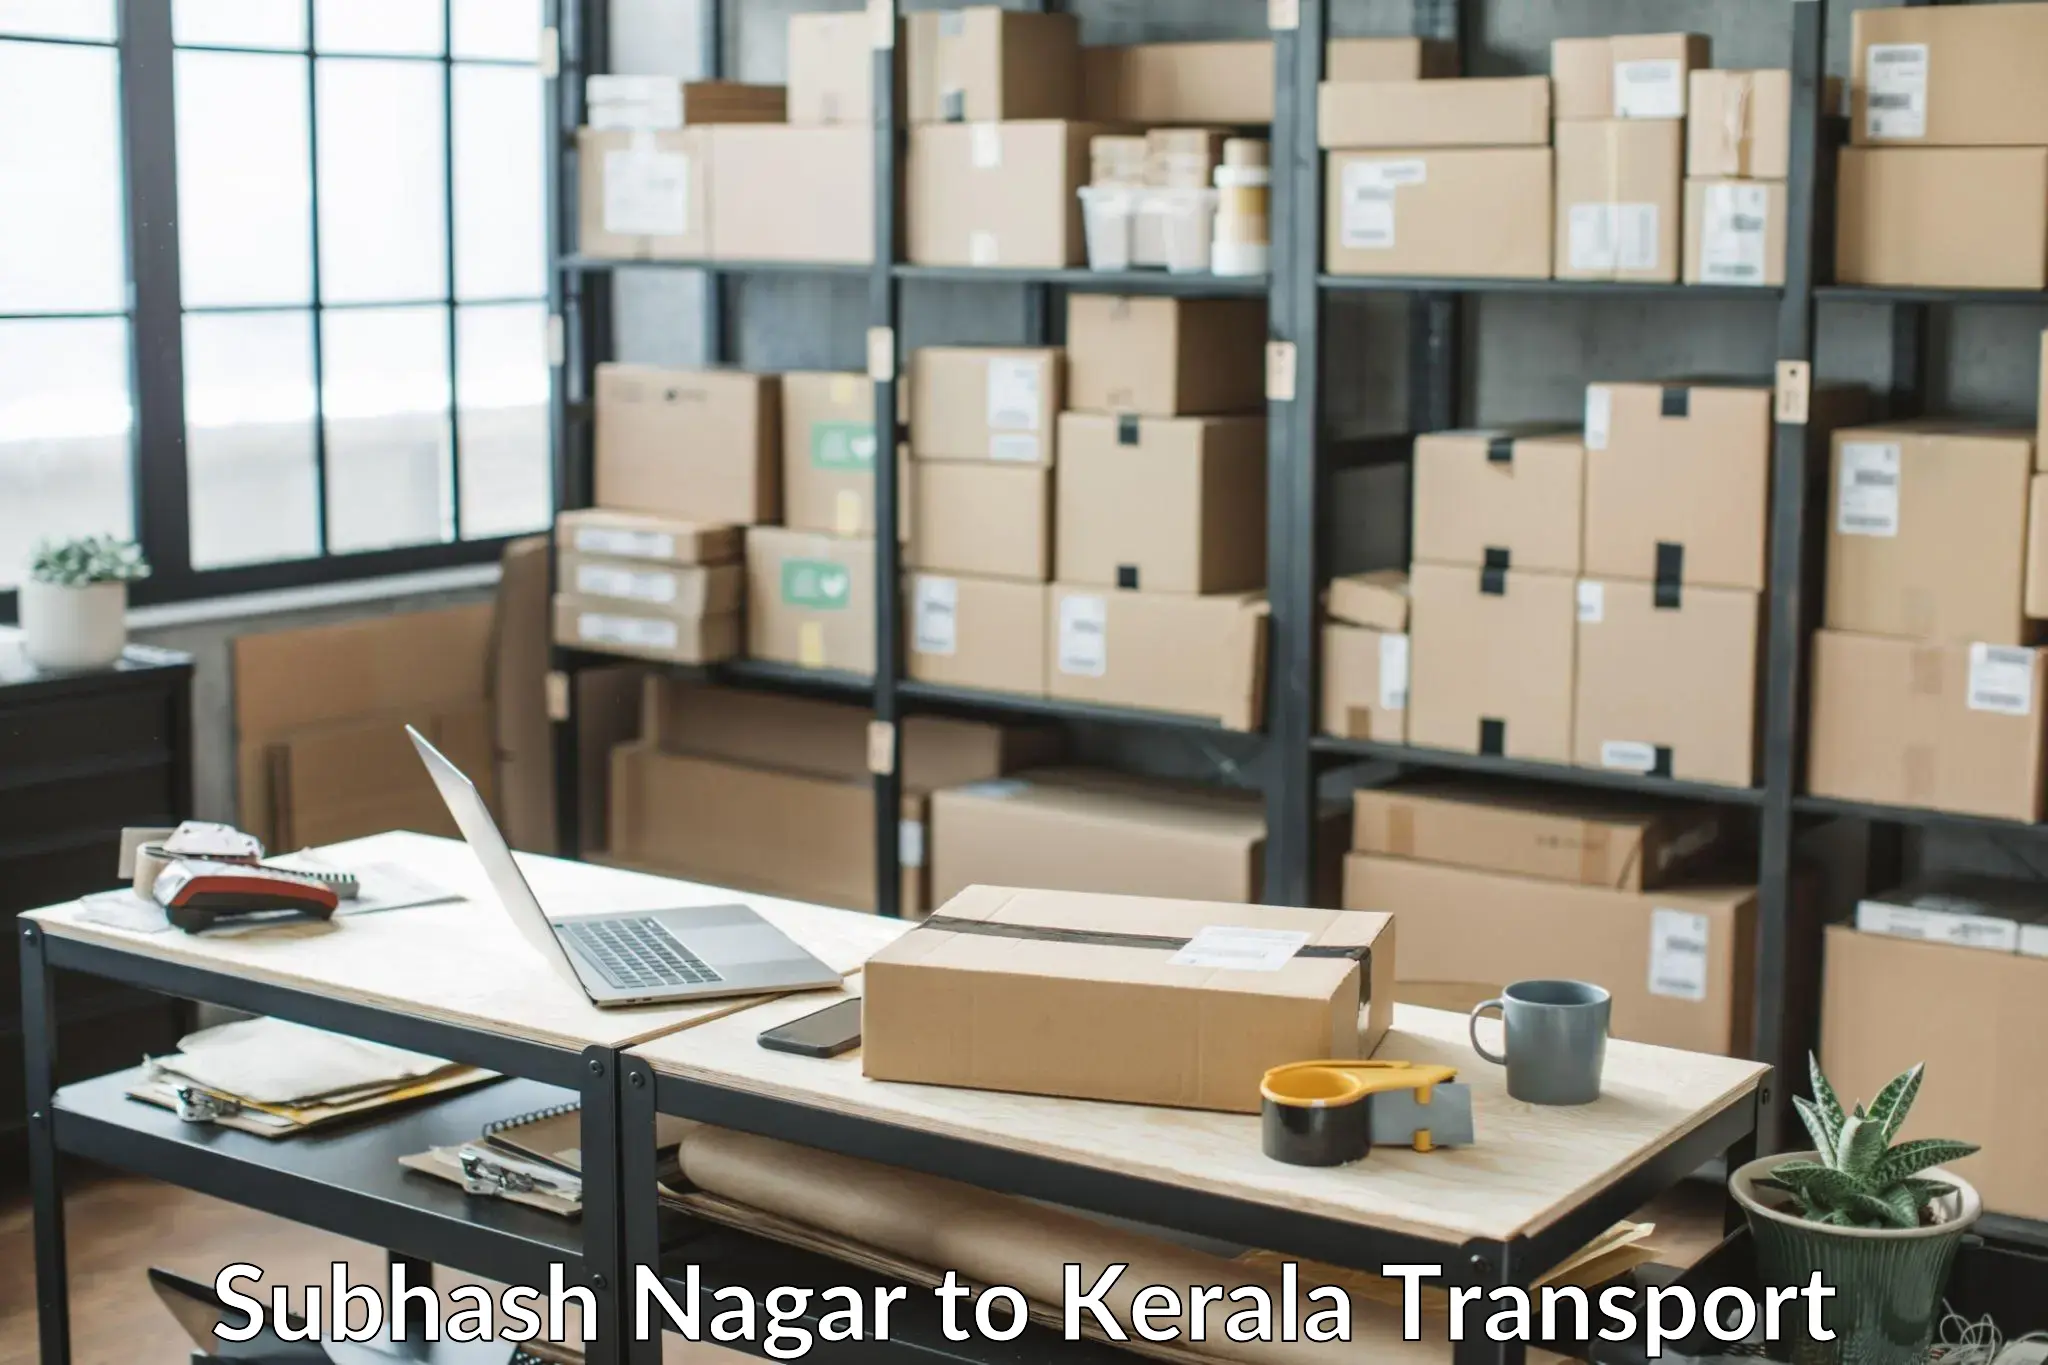 Container transport service Subhash Nagar to Thiruvananthapuram